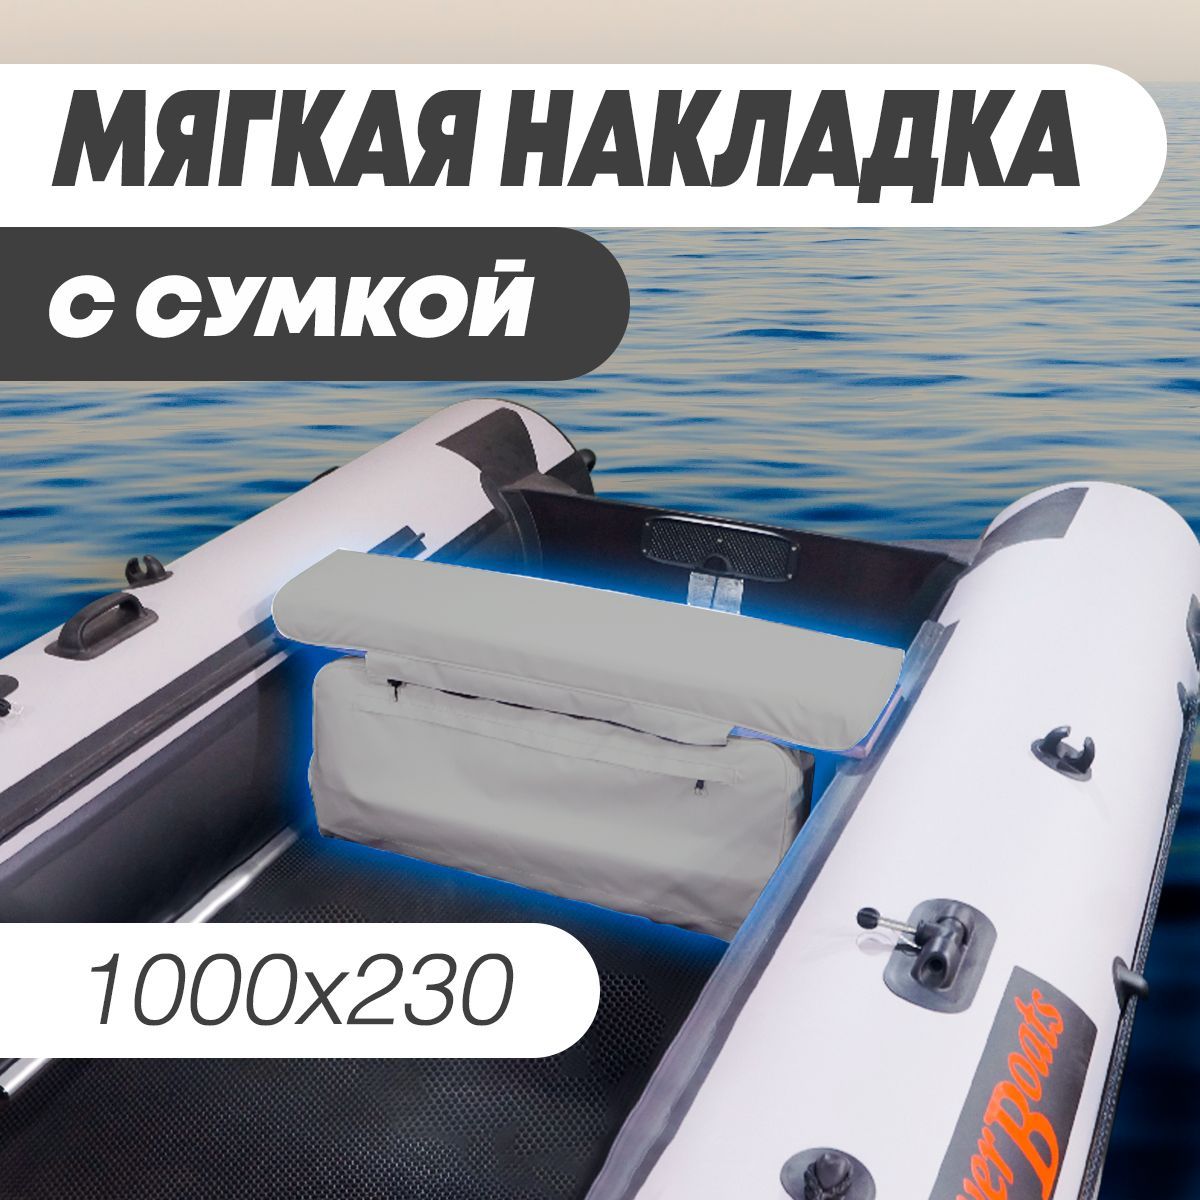 Сиденья и сумки для лодок ПВХ в Иркутске